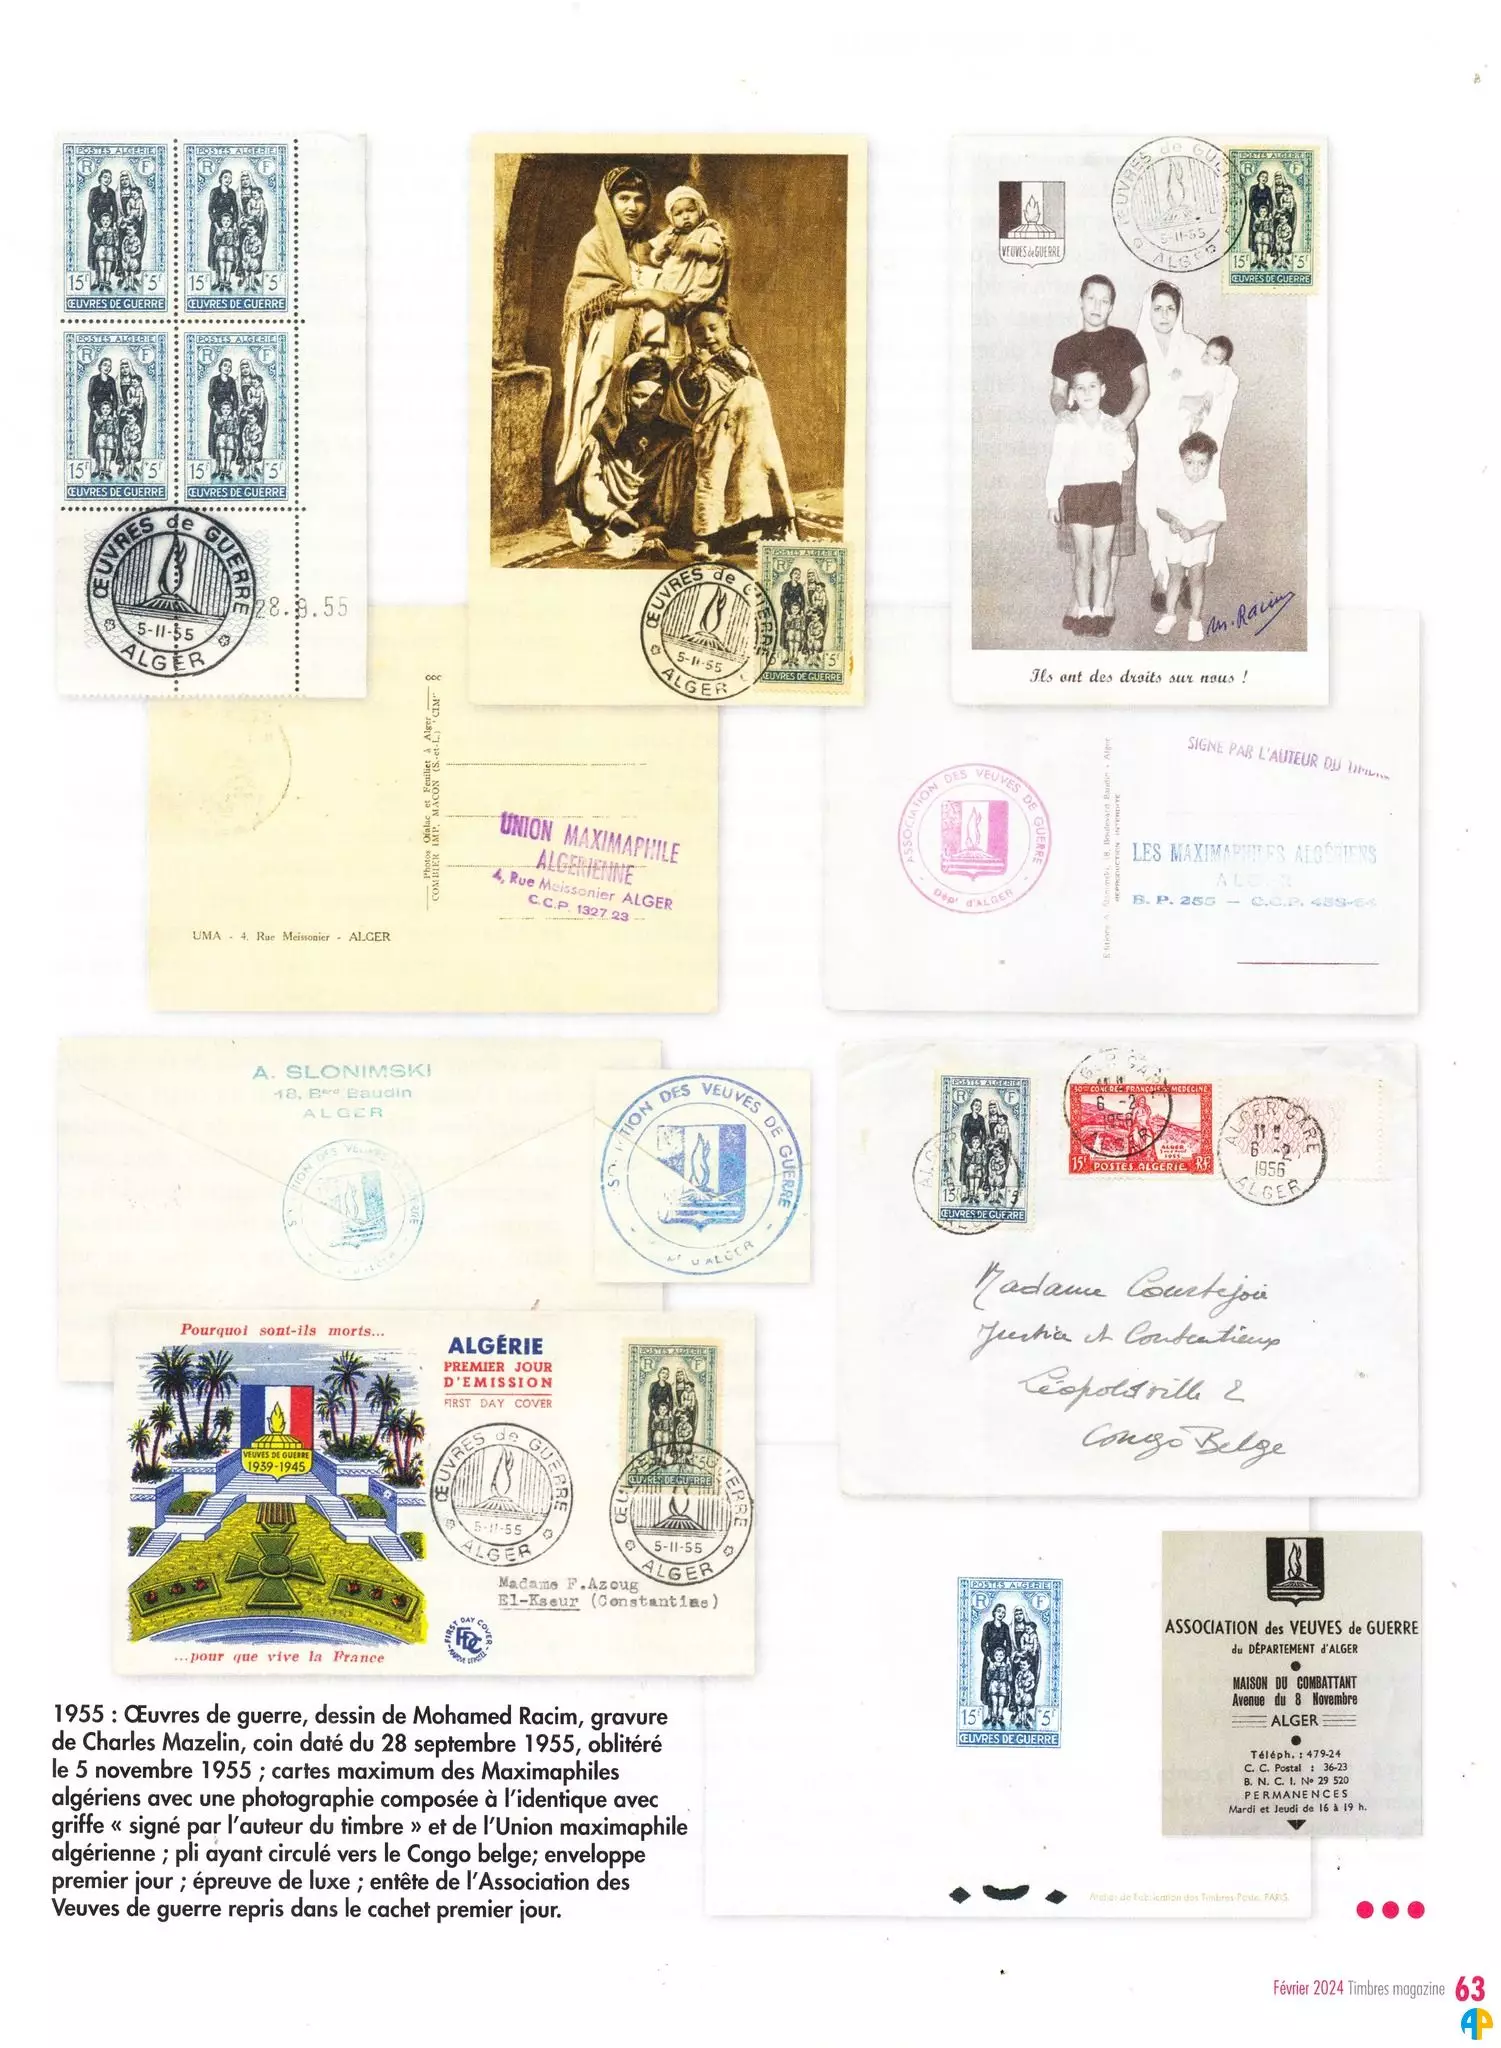 Algérie 1945-1958 : Philatélie et timbres à surtaxe (3ème partie)